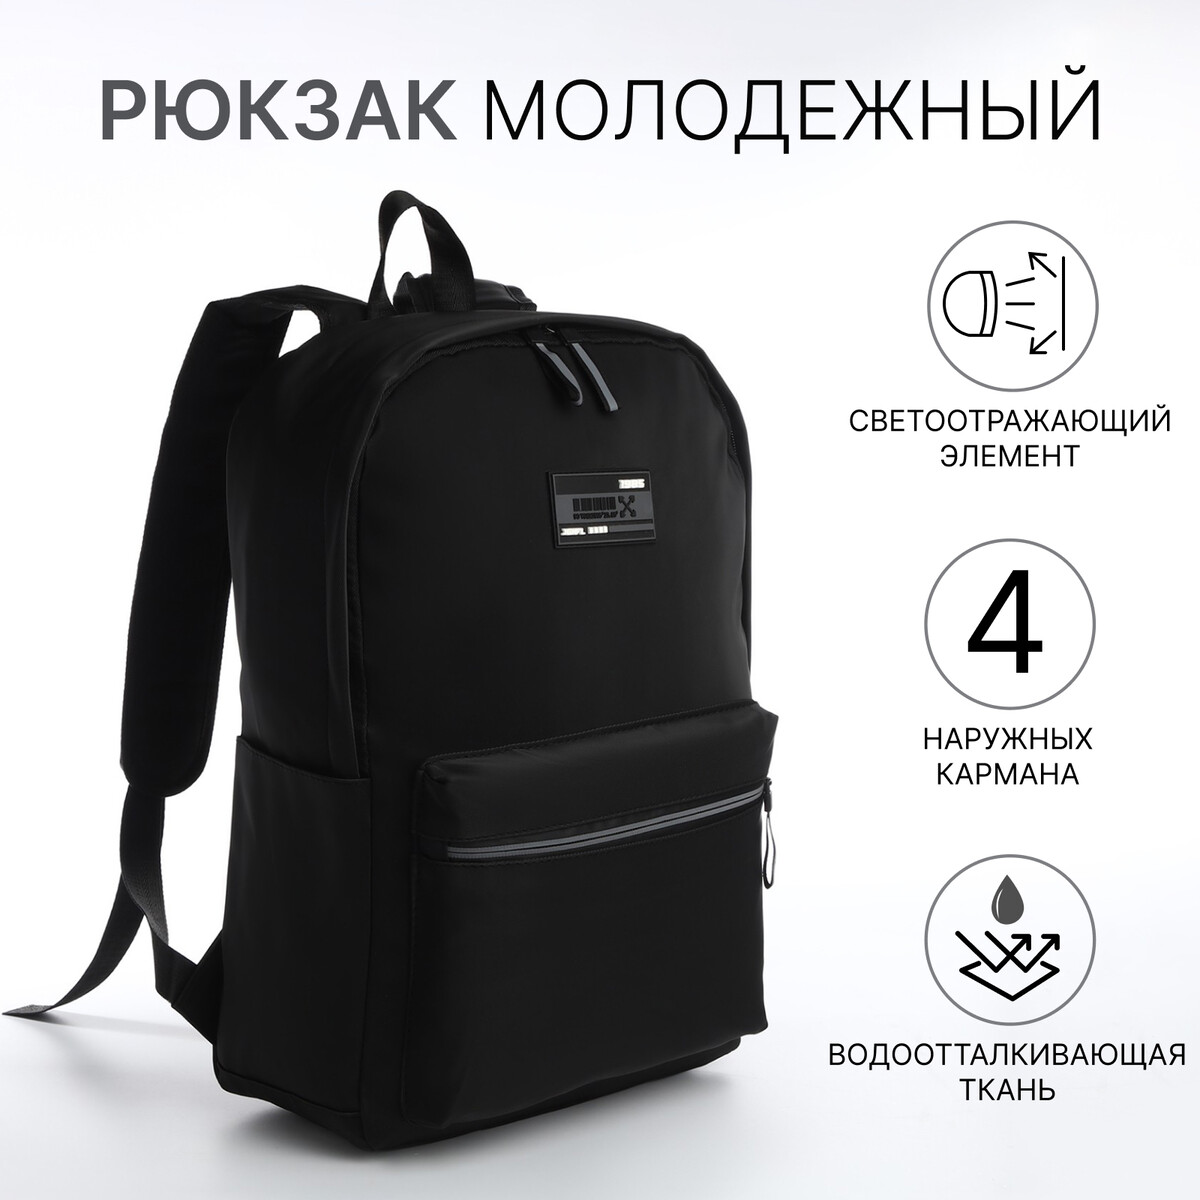 Рюкзак молодежный из текстиля на молнии, 4 кармана, цвет черный/серый